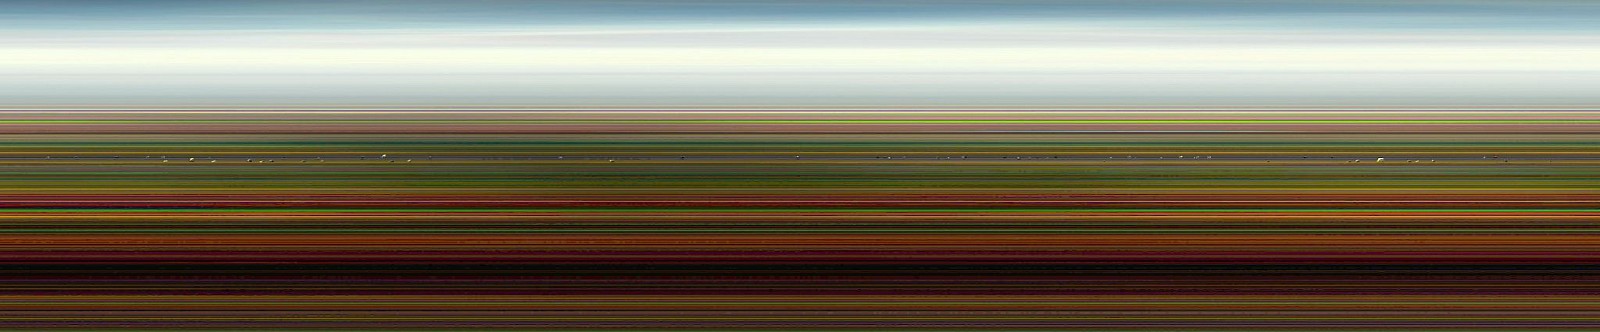 Jay Mark Johnson, CITTA DEI MOTORINI #2, 2008 Roma IT
archival pigment on paper, mounted on aluminum, 40 x 192 in. (101.6 x 487.7 cm)